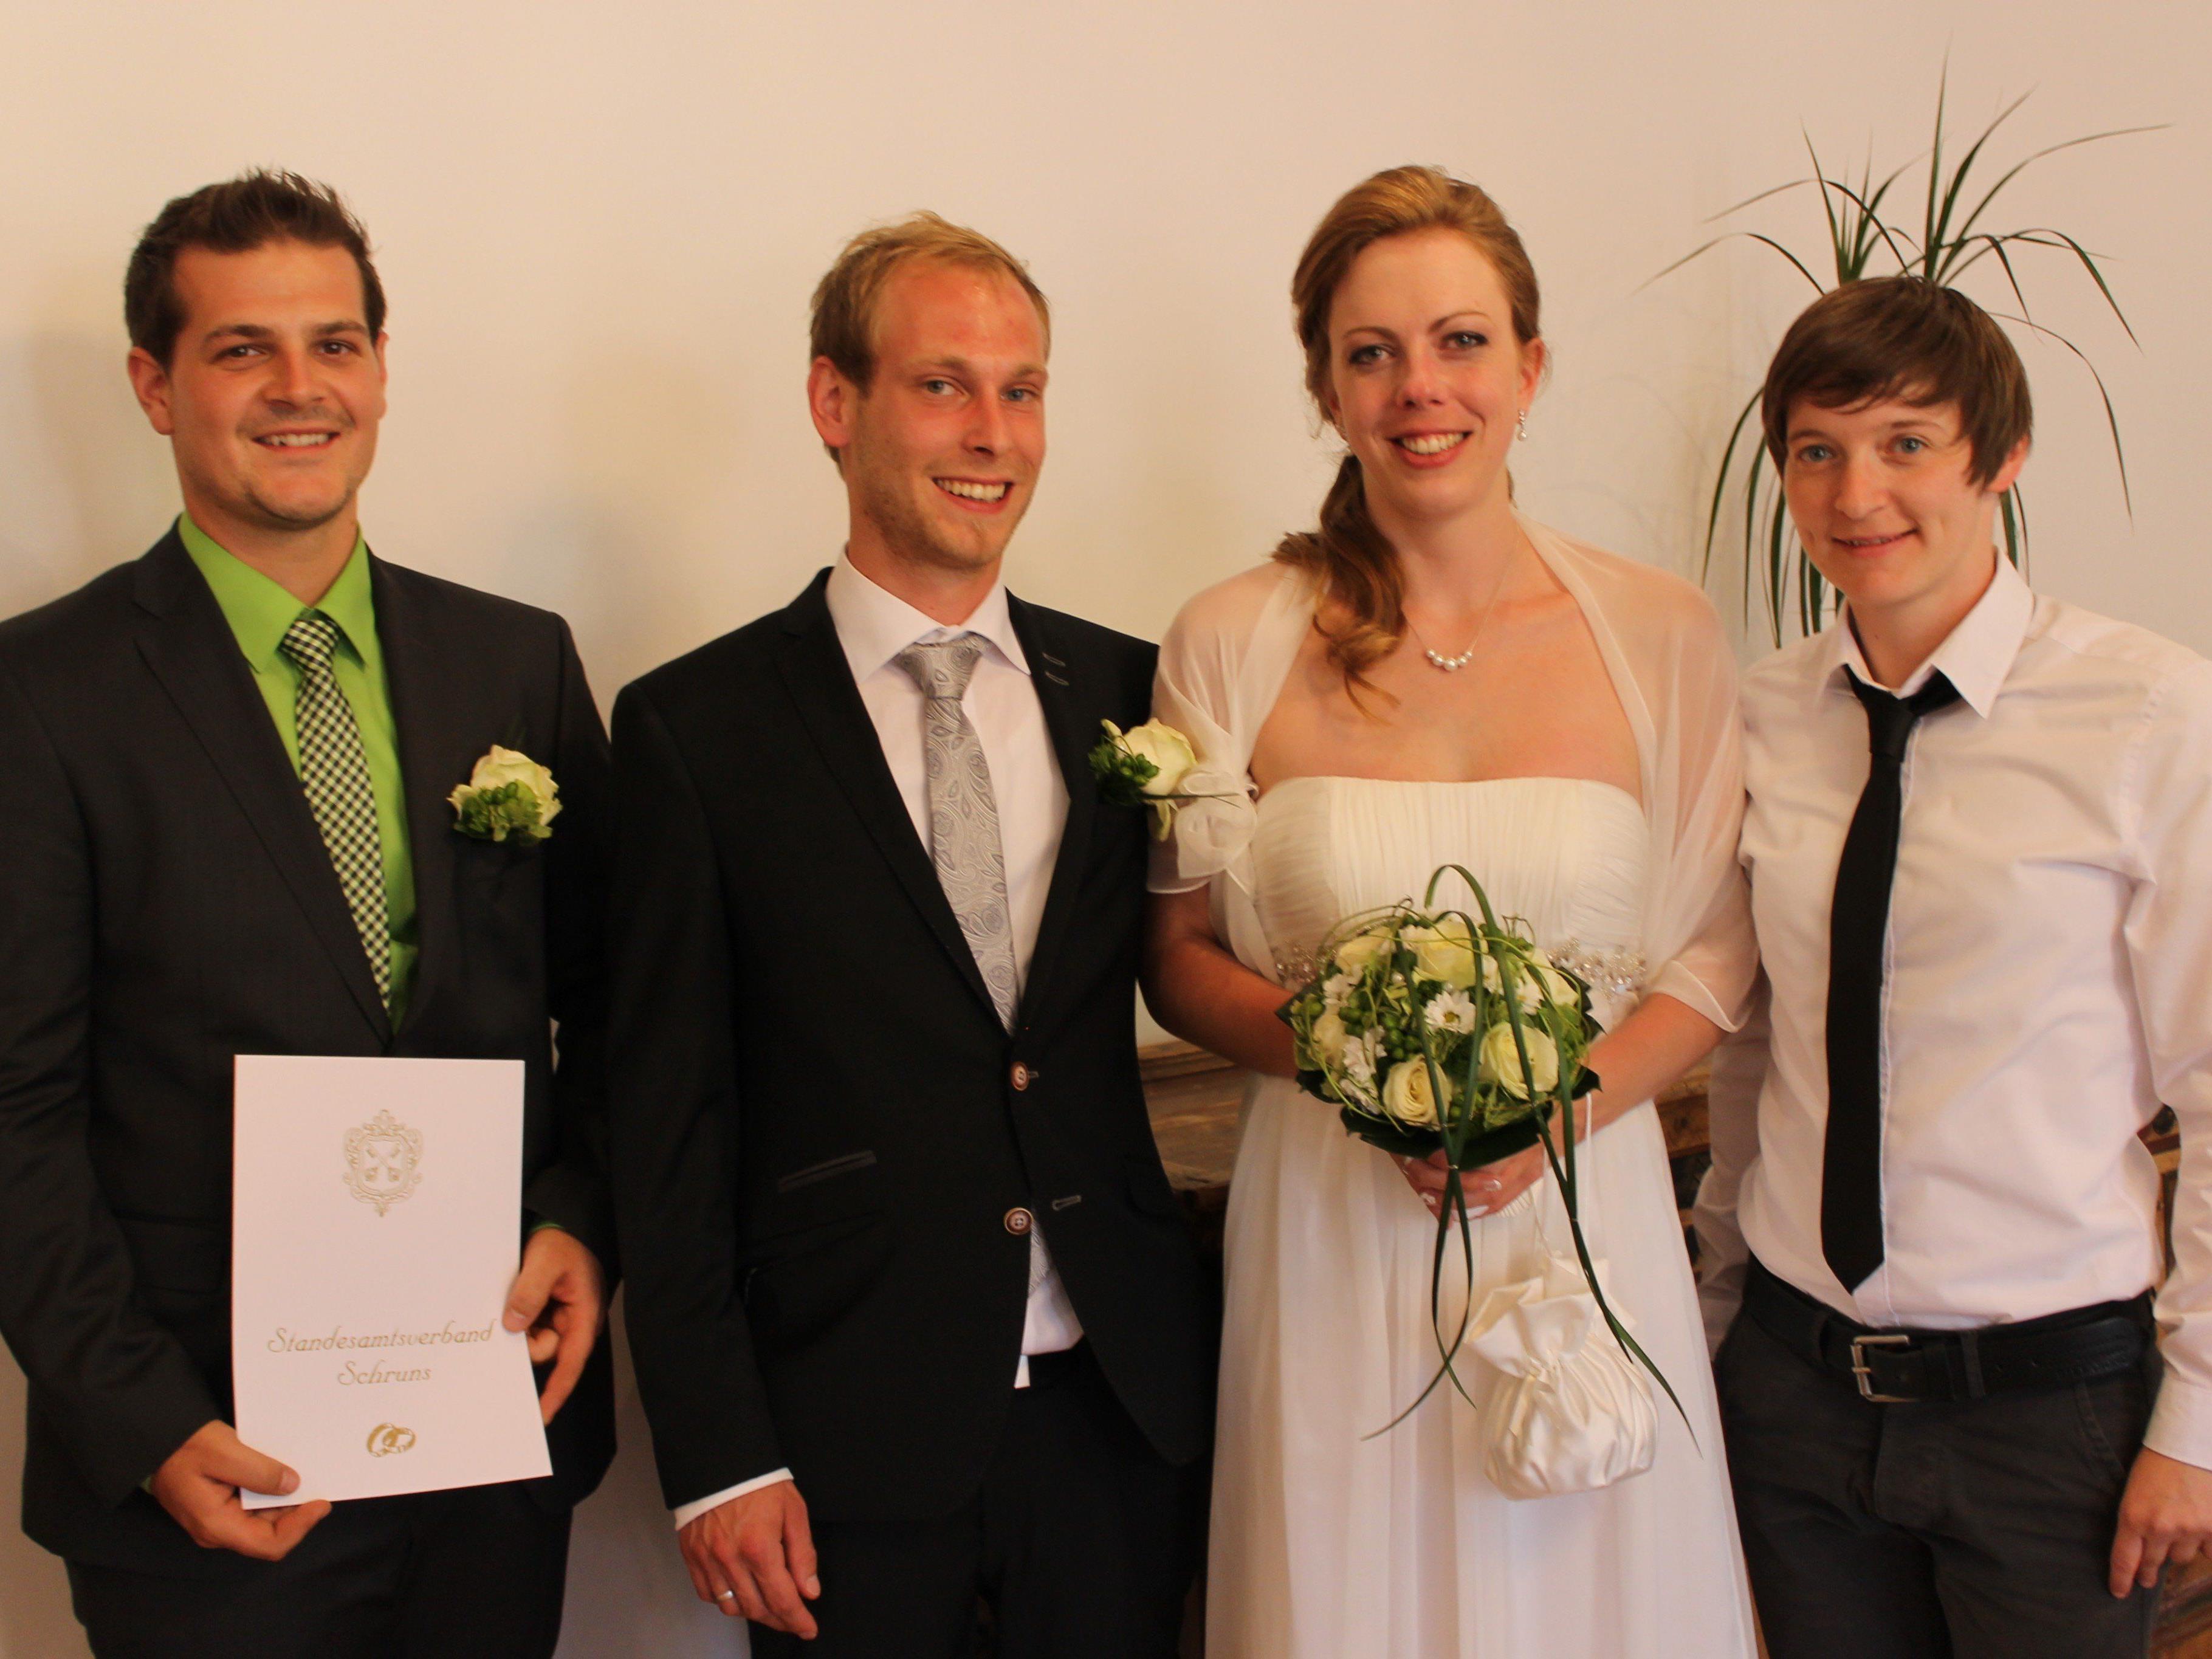 Cornelia Wagenblast und Andreas Mangeng haben geheiratet